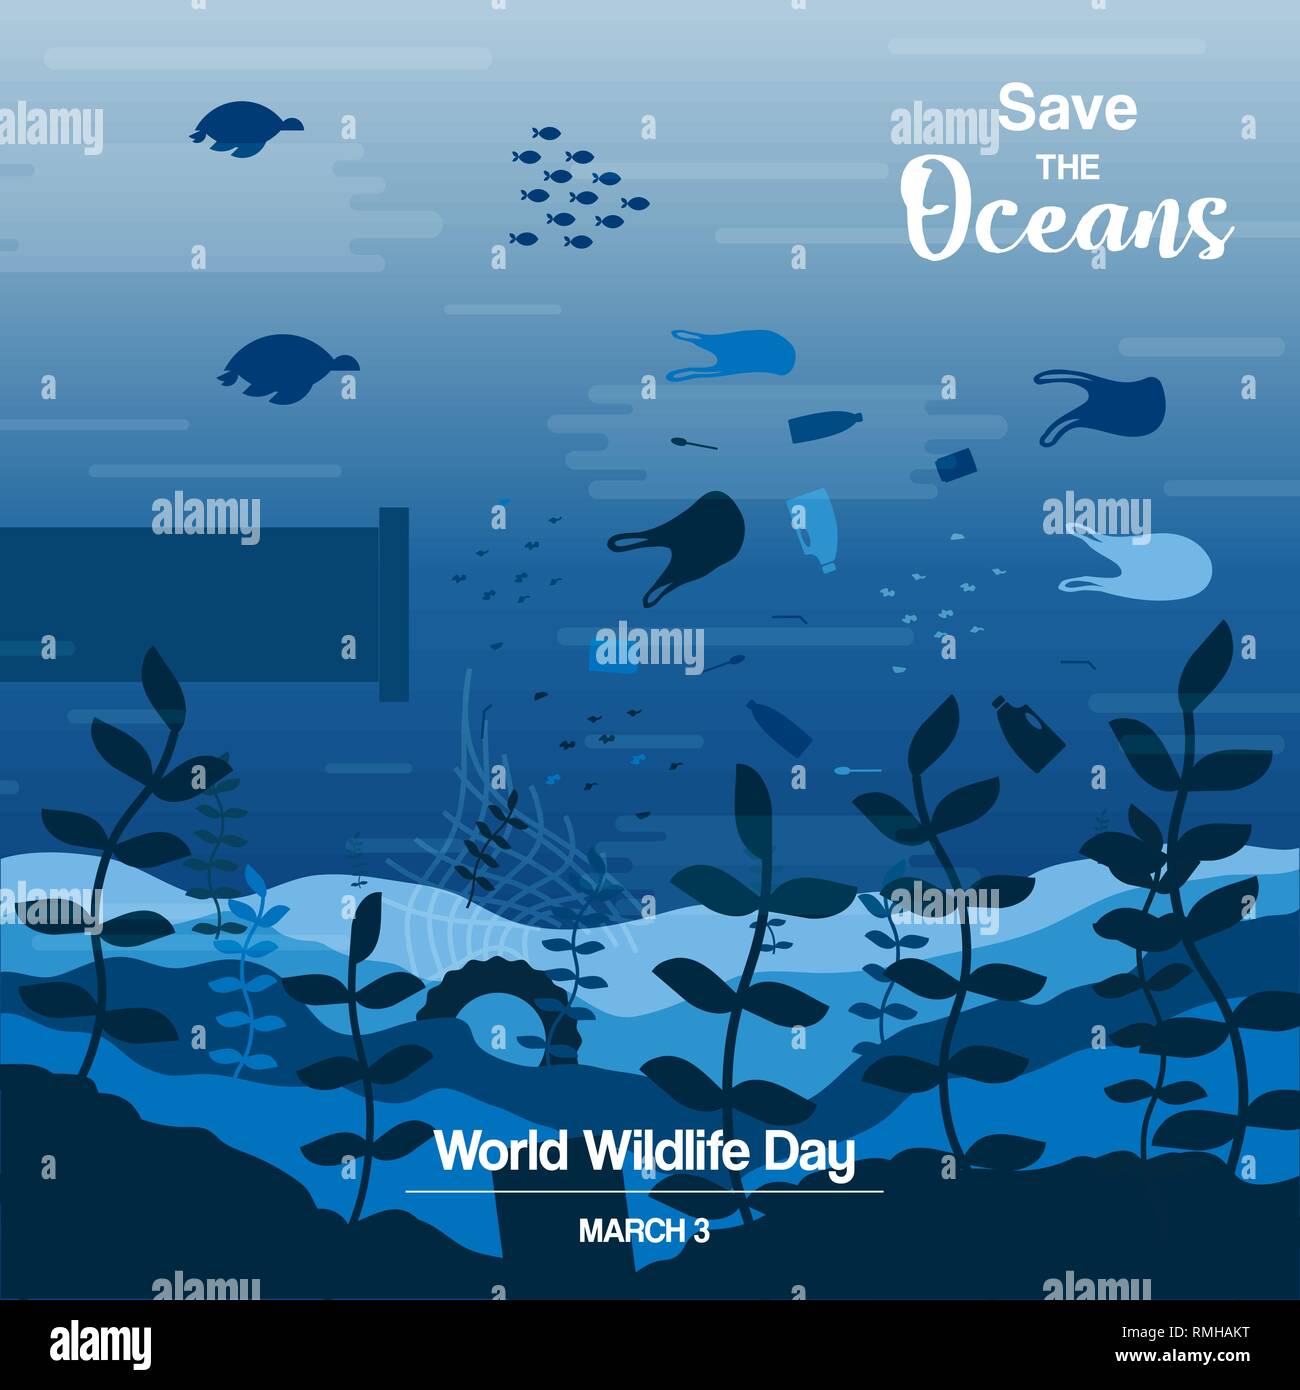 Wildlife Tag Abbildung: Meer Wasser Tiere und Fische schwimmen mit Kunststoffabfällen. Speichern Sie die Ozeane Konzept, Unterwasser Erhaltung Bewusstsein. Stock Vektor